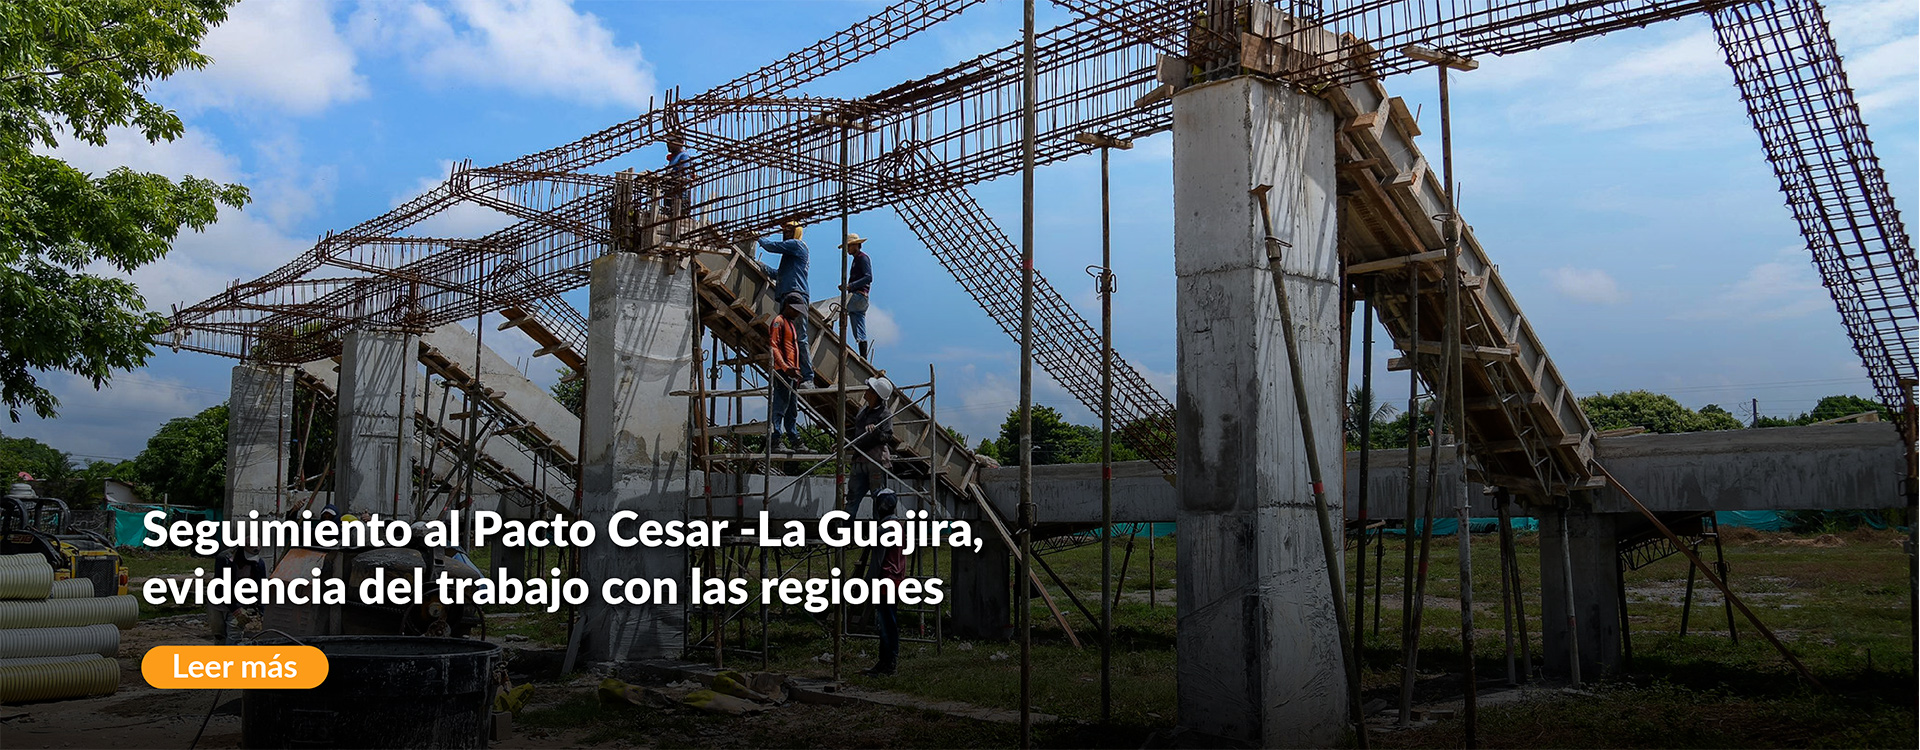 Seguimiento al Pacto Cesar -La Guajira, evidencia del trabajo con las regiones